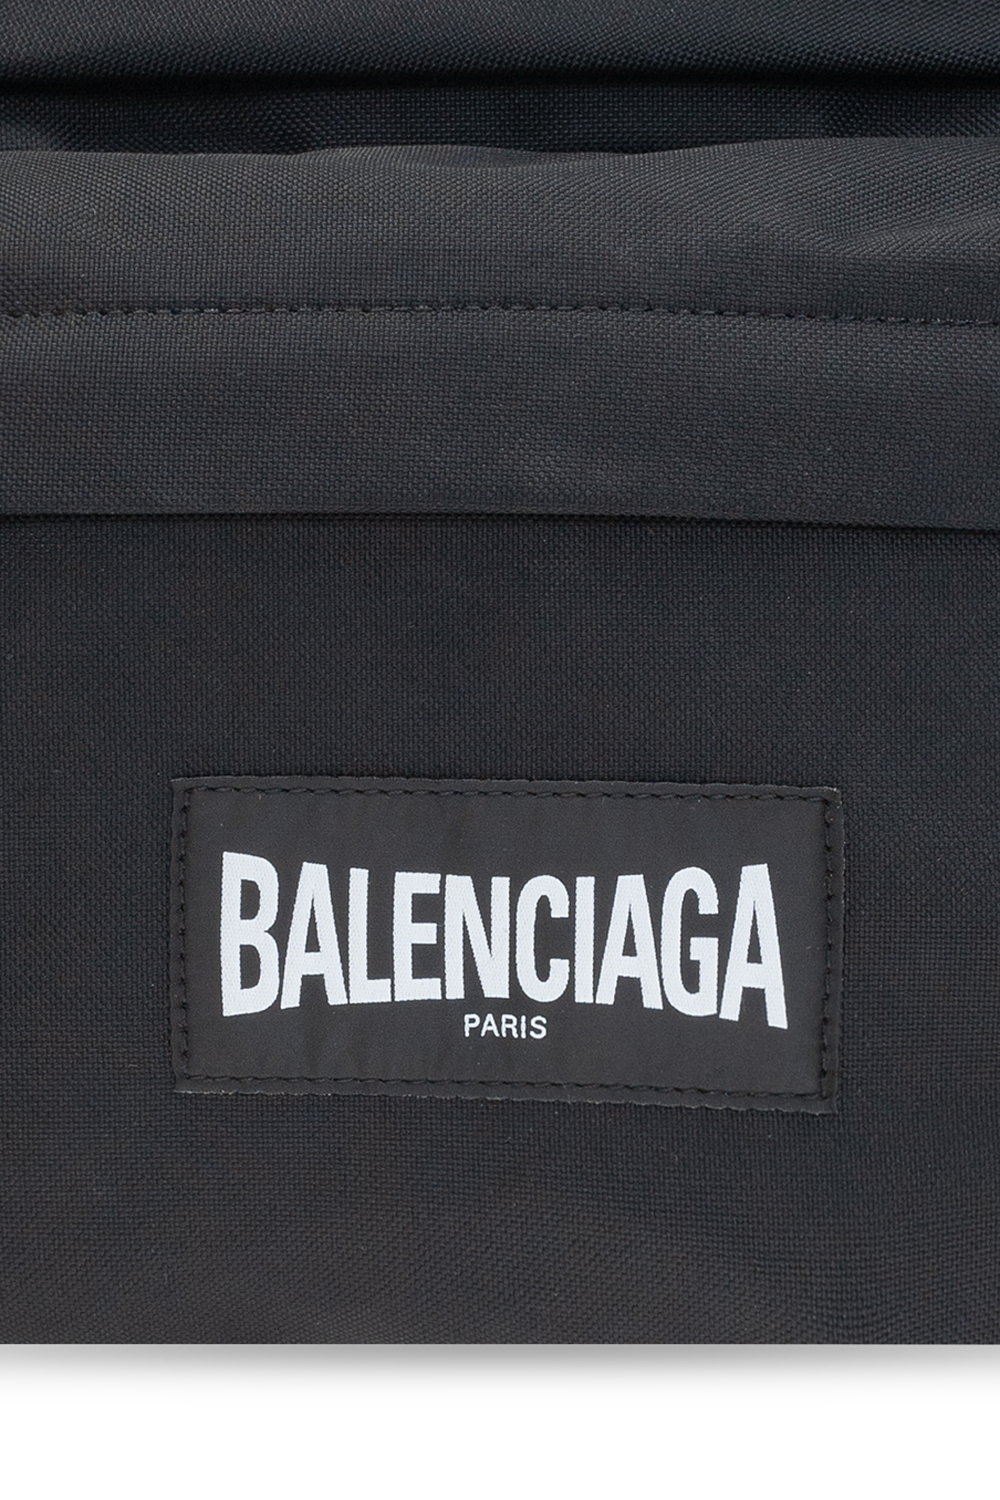 Balenciaga cross-body bags here